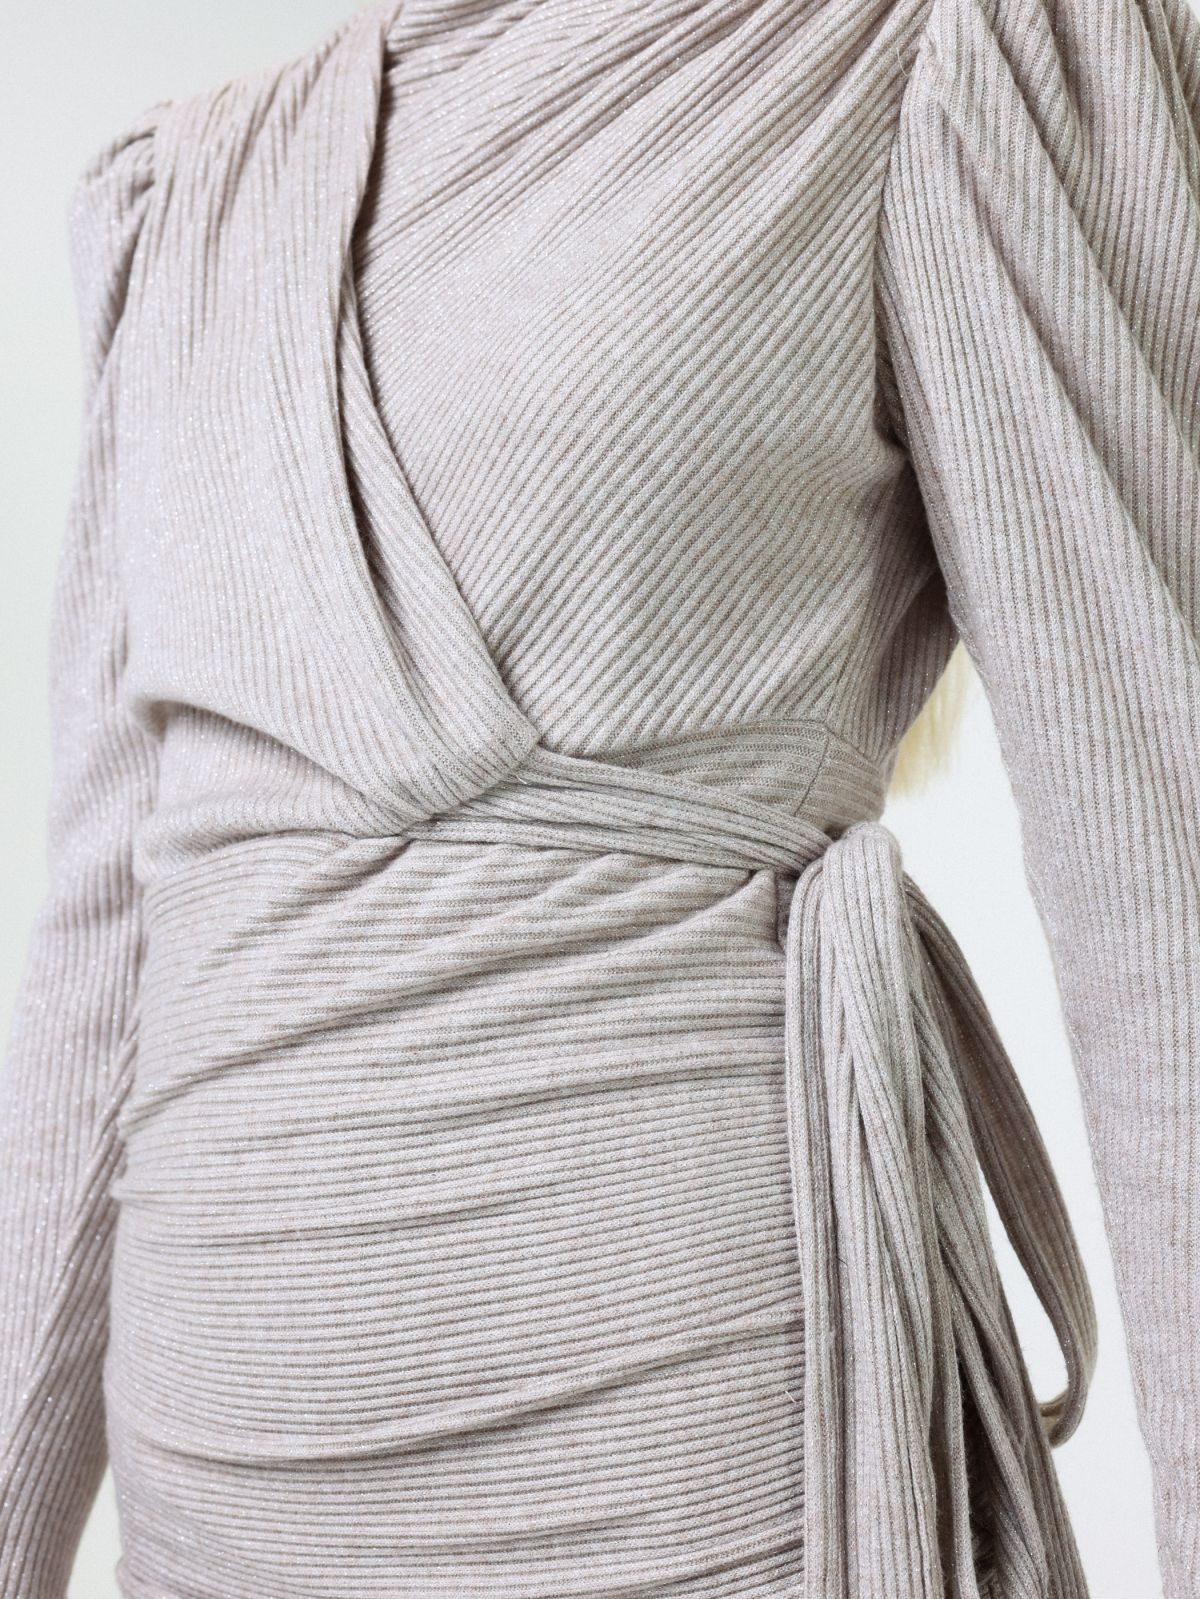  שמלת מיני בסגנון מעטפת של SABINA MUSAYEV